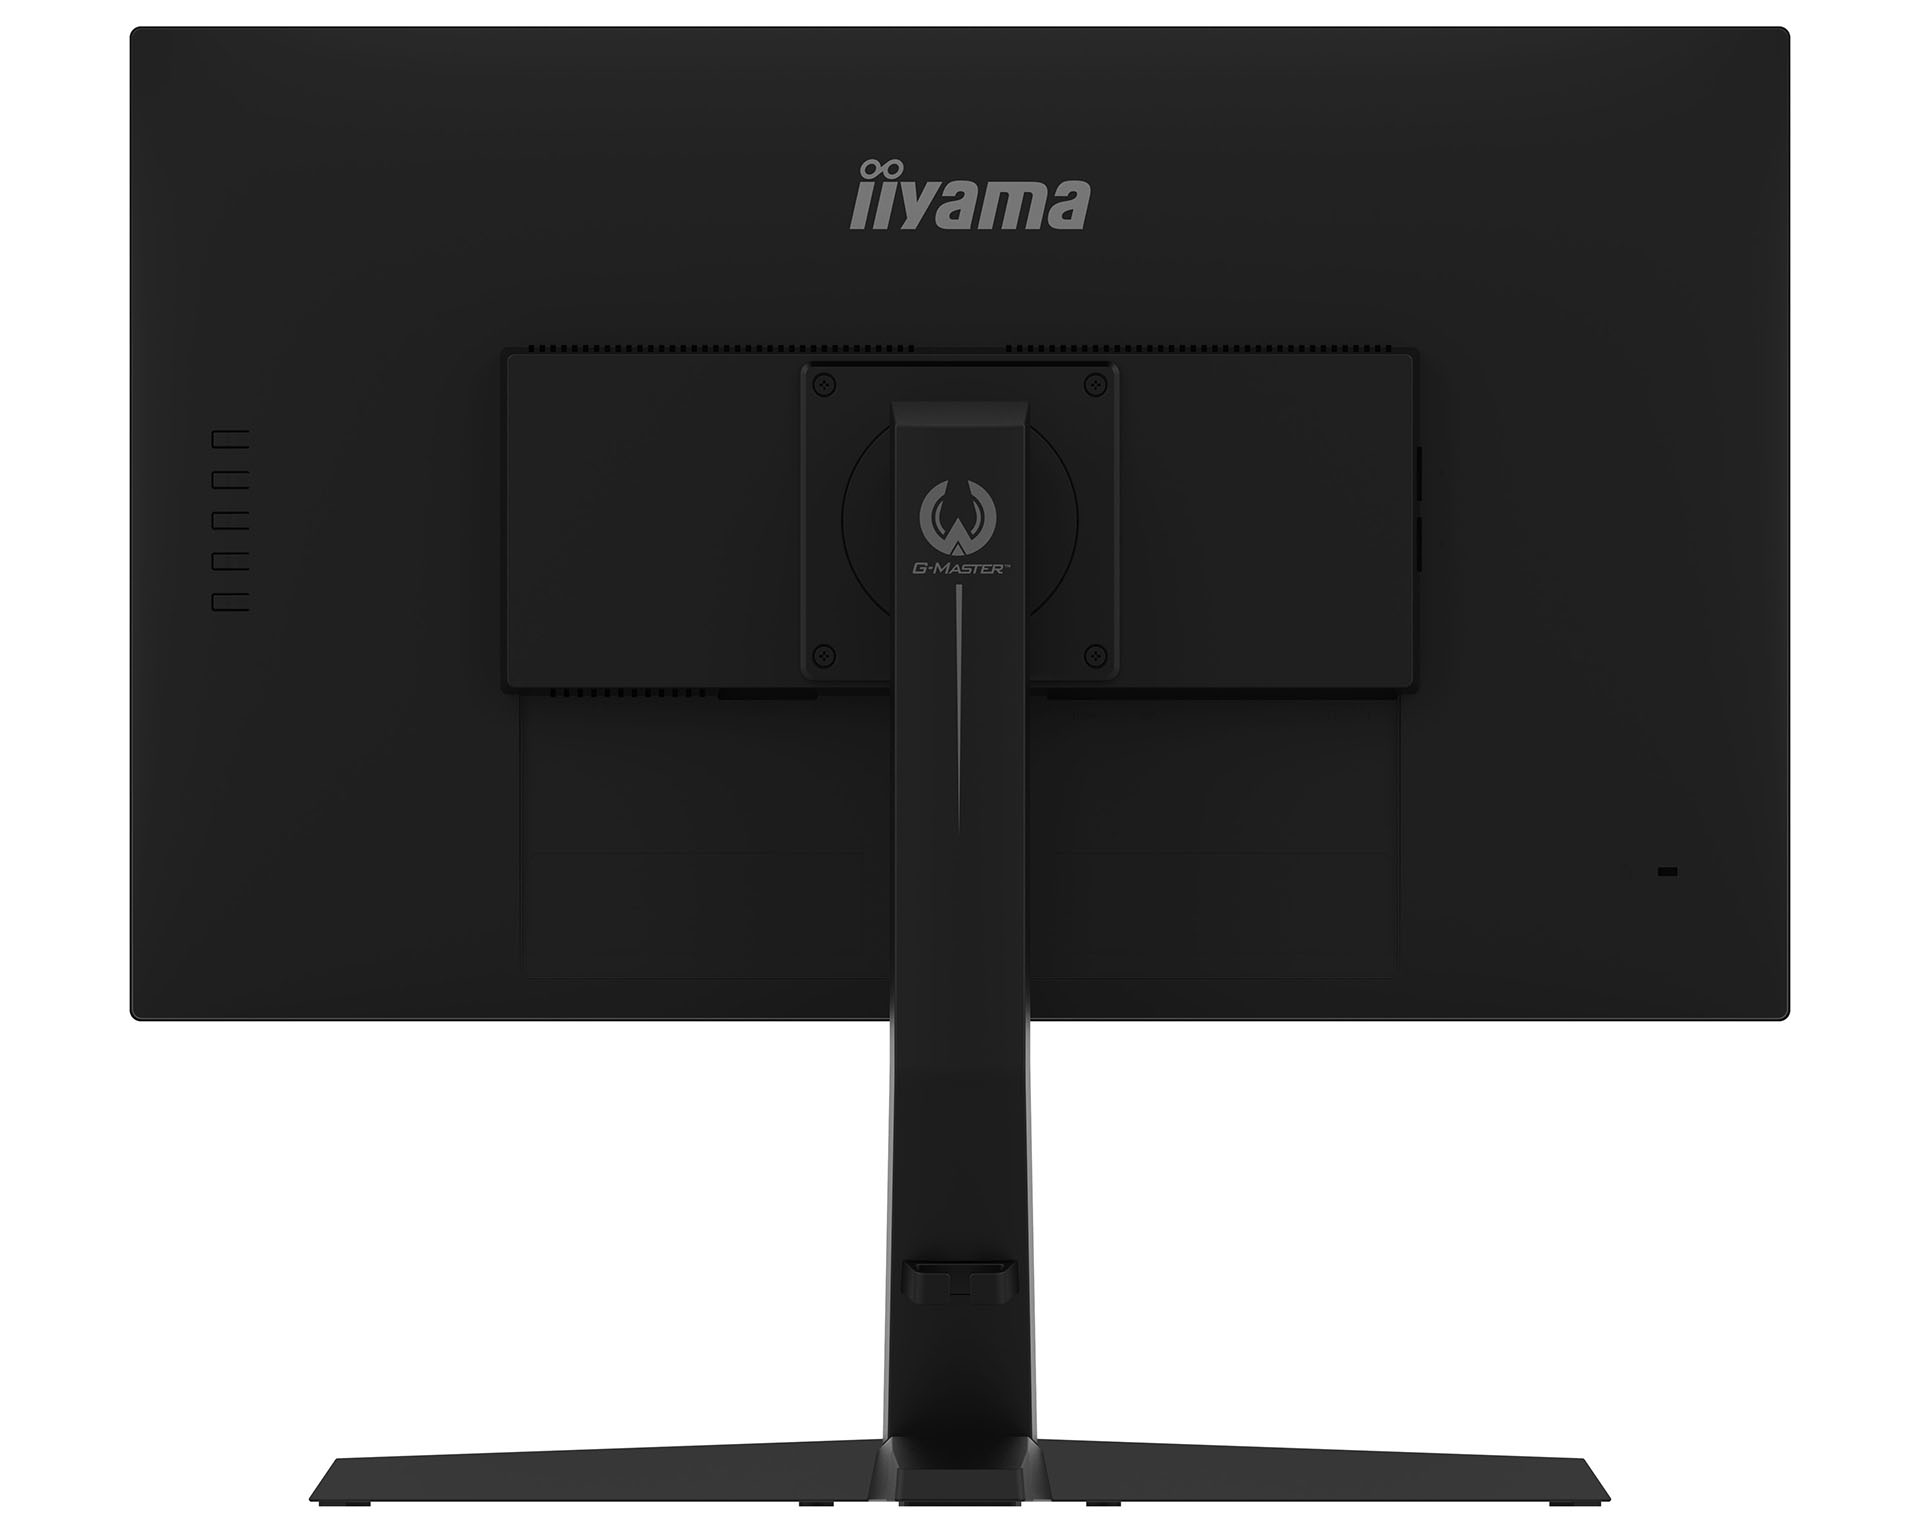 Review: iiyama G-Master GB2770HSU-B1 - Monitors - HEXUS.net